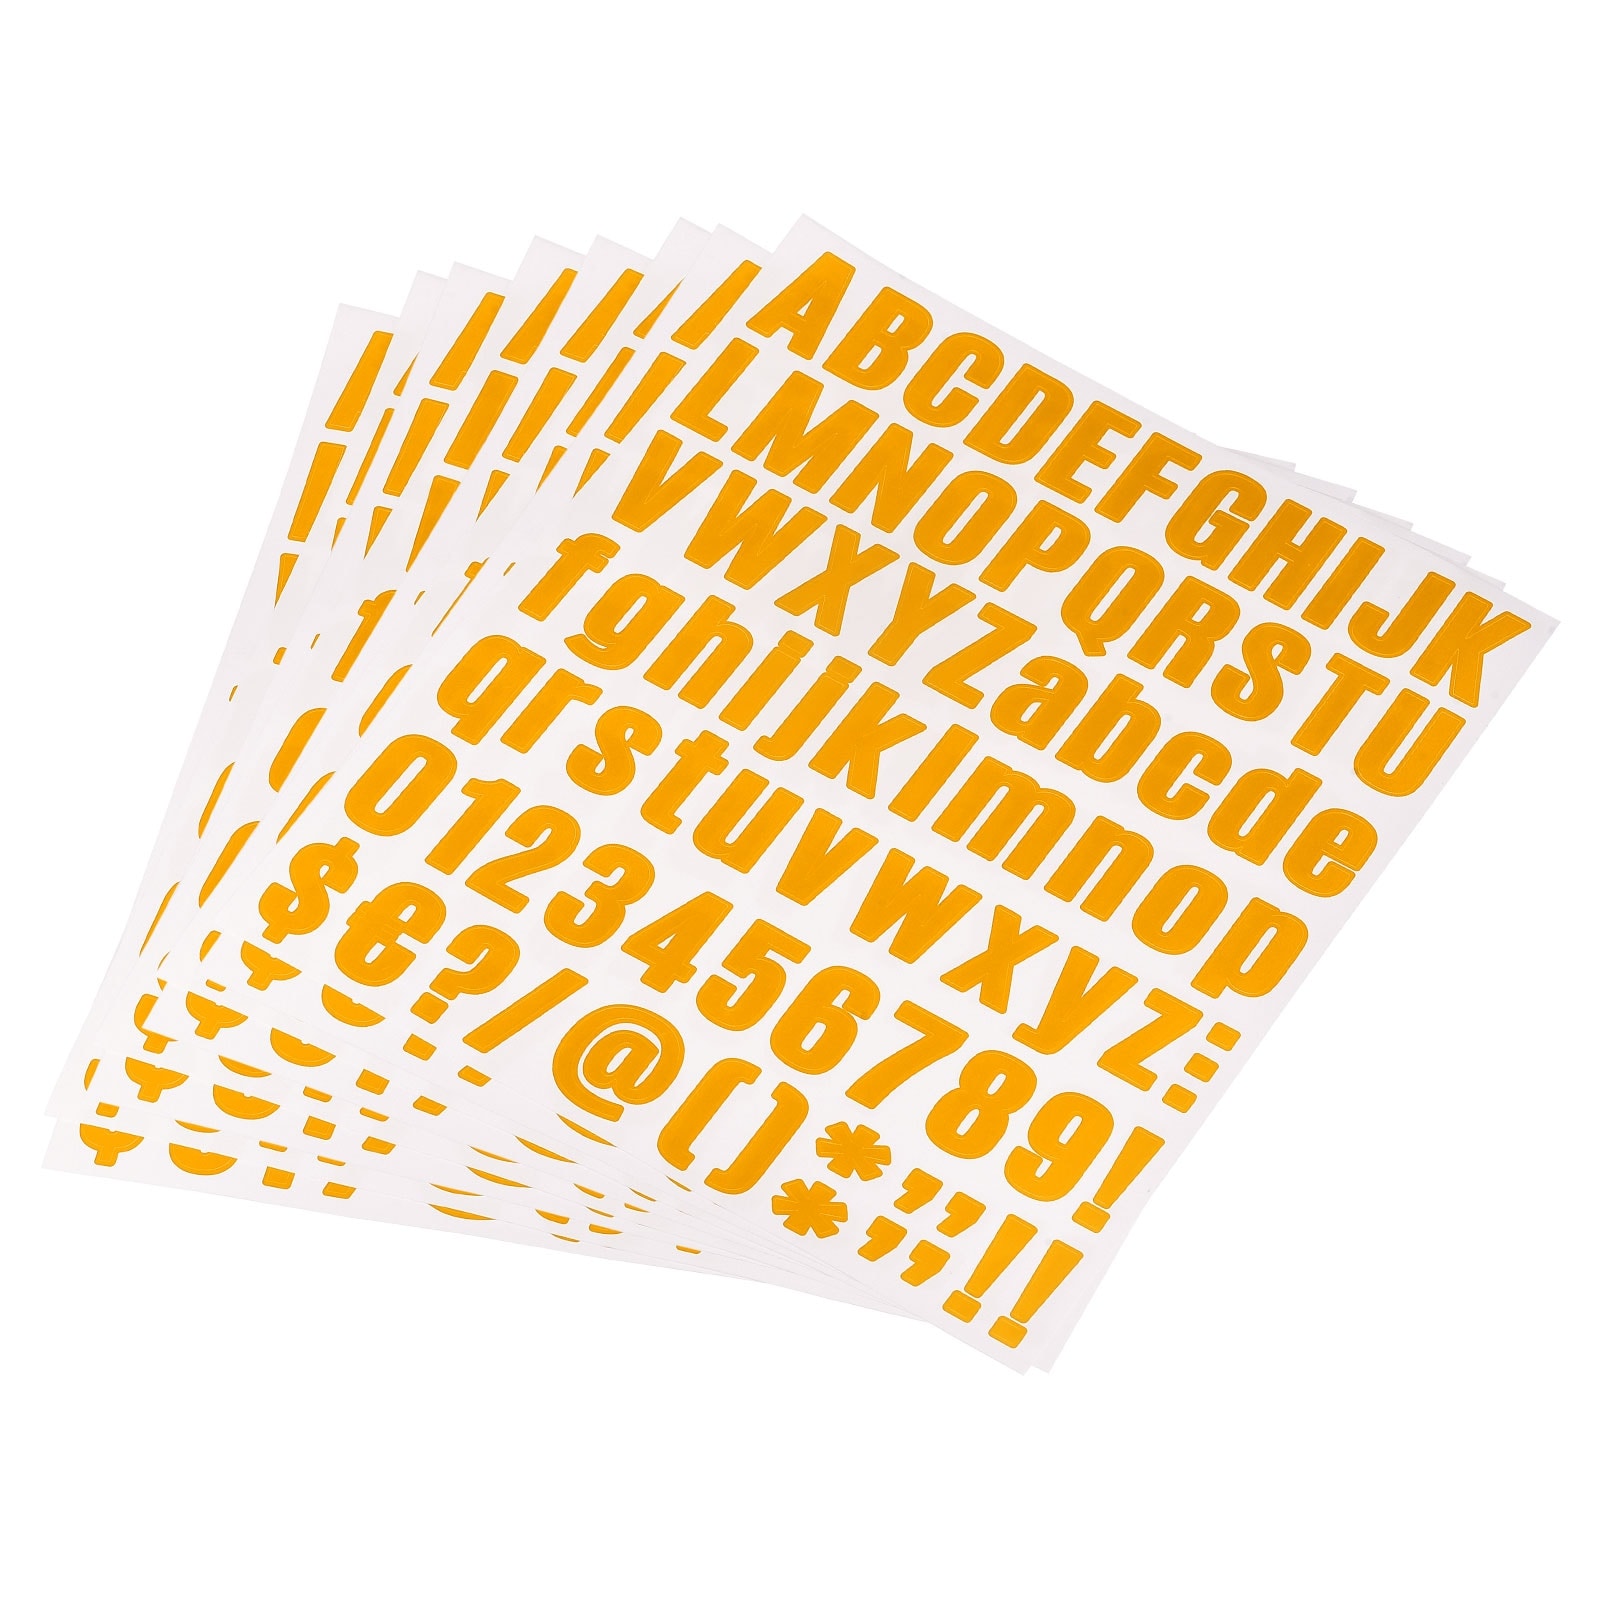 1 Inch Self Adhesive Waterproof Vinyl Letter Number Stickers 8 Sheet Orange  - Bed Bath & Beyond - 36629591